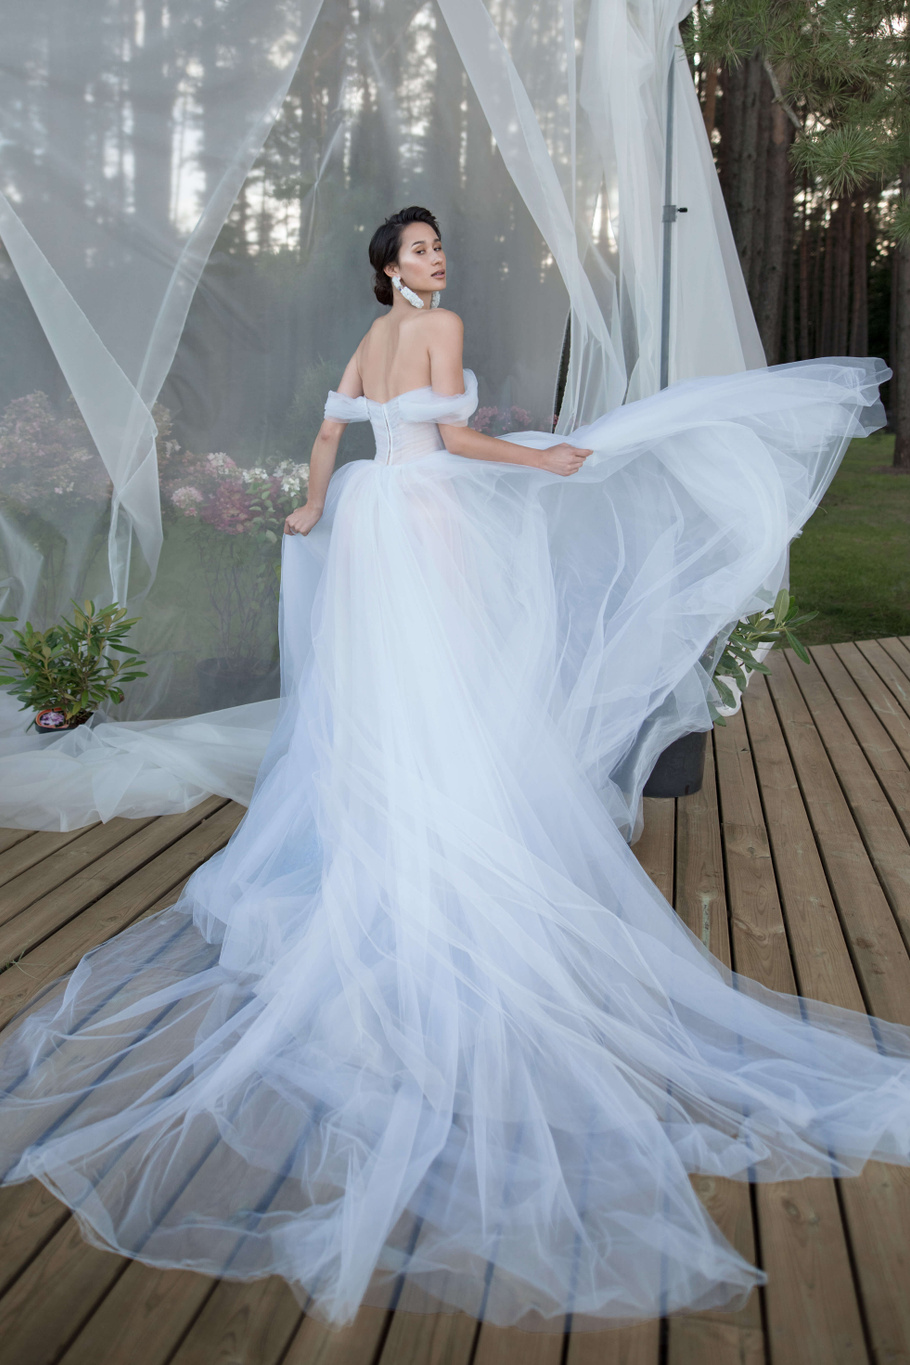 Купить свадебное платье «Оливер» Бламмо Биамо из коллекции Нимфа 2020 года в Нижнем Новгороде